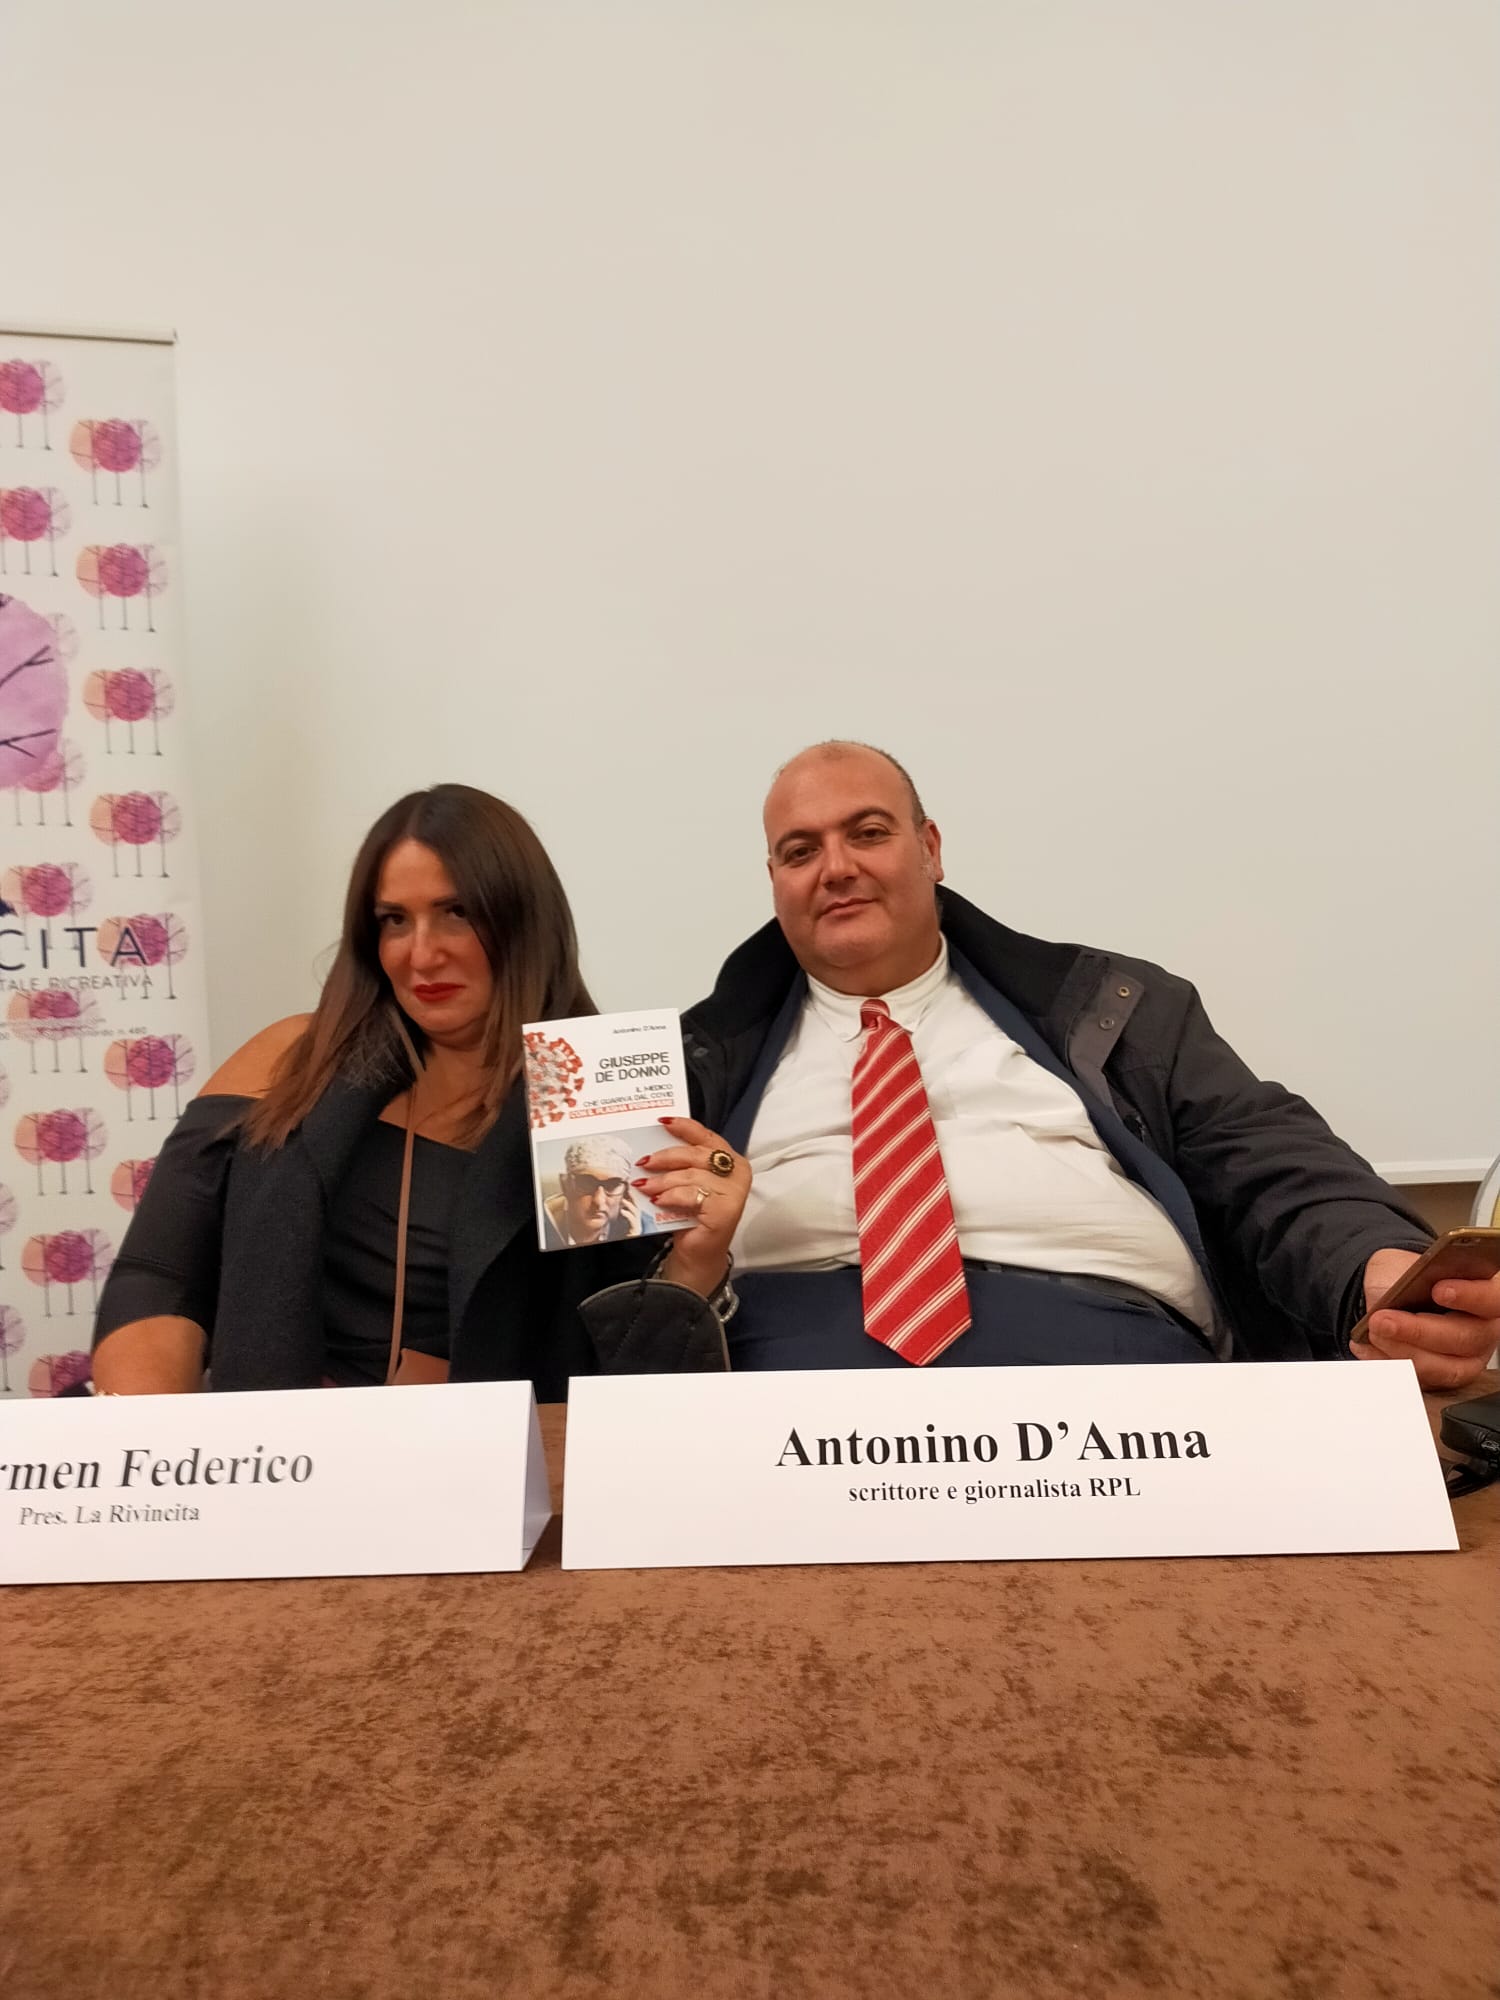 Saronno, Antonino D’Anna insieme a La Rivincita per presentare De Donno e la cura col plasma